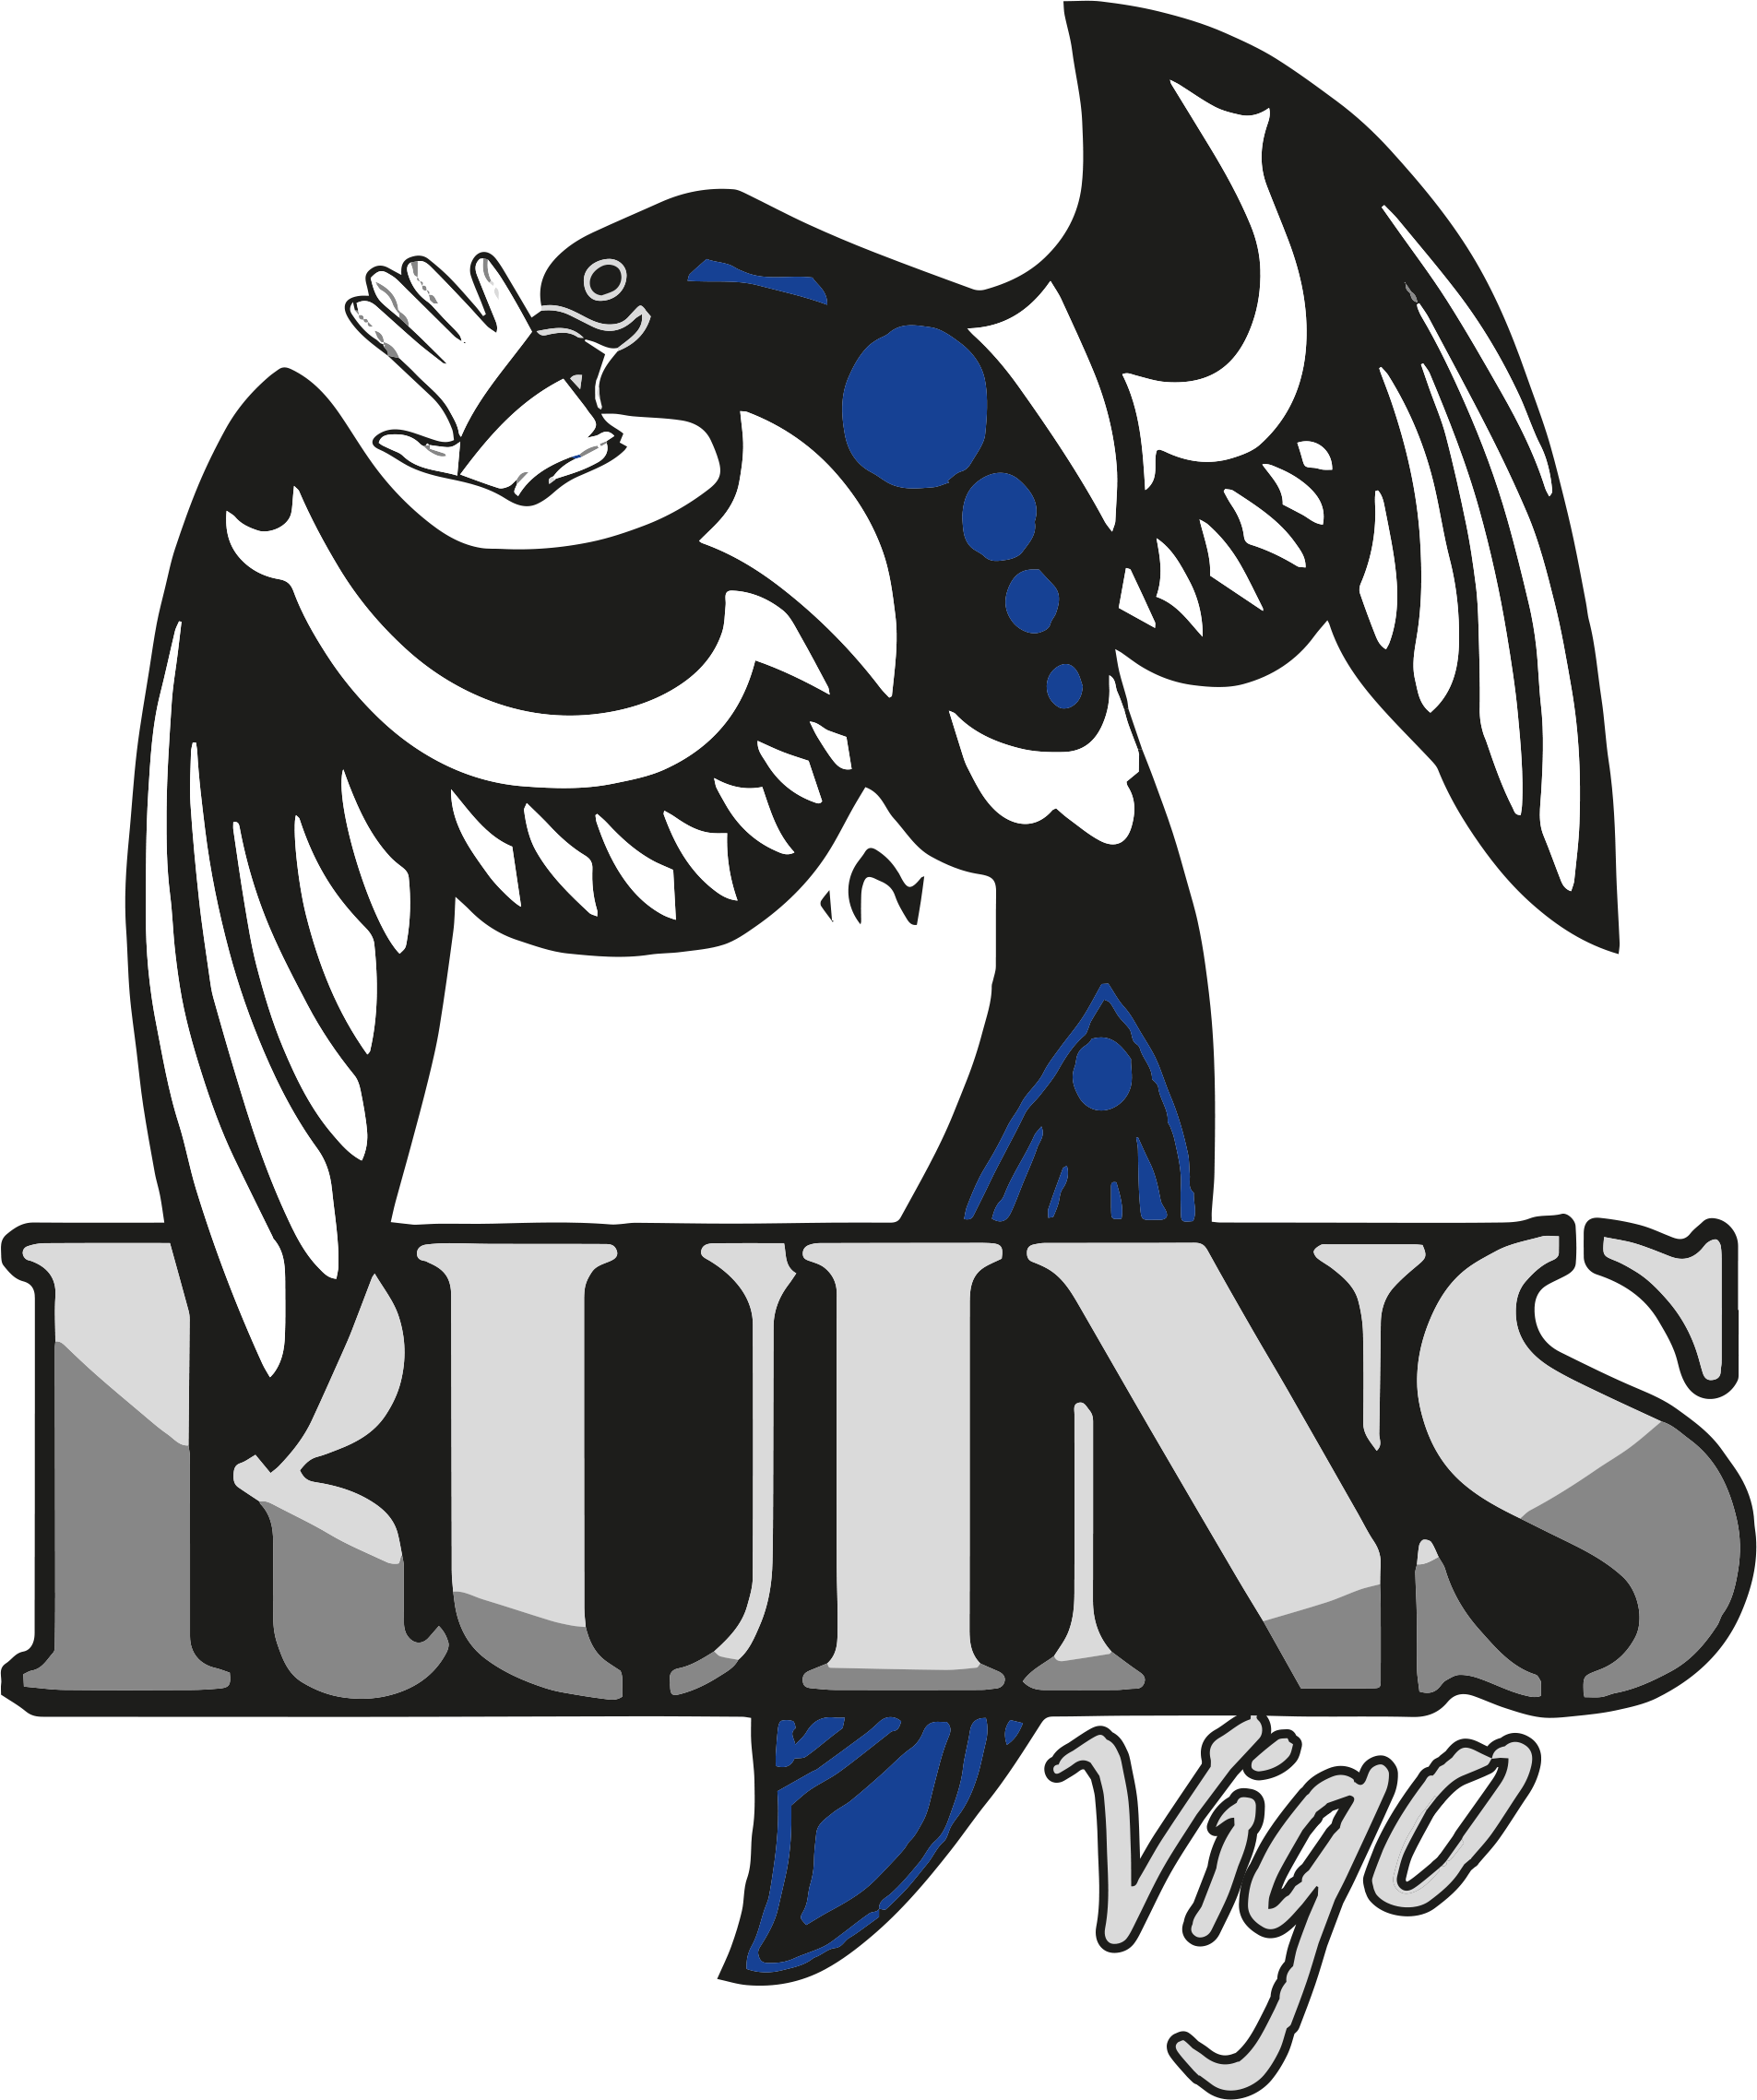 Logo de Vigo Ruíns Jugger Club.